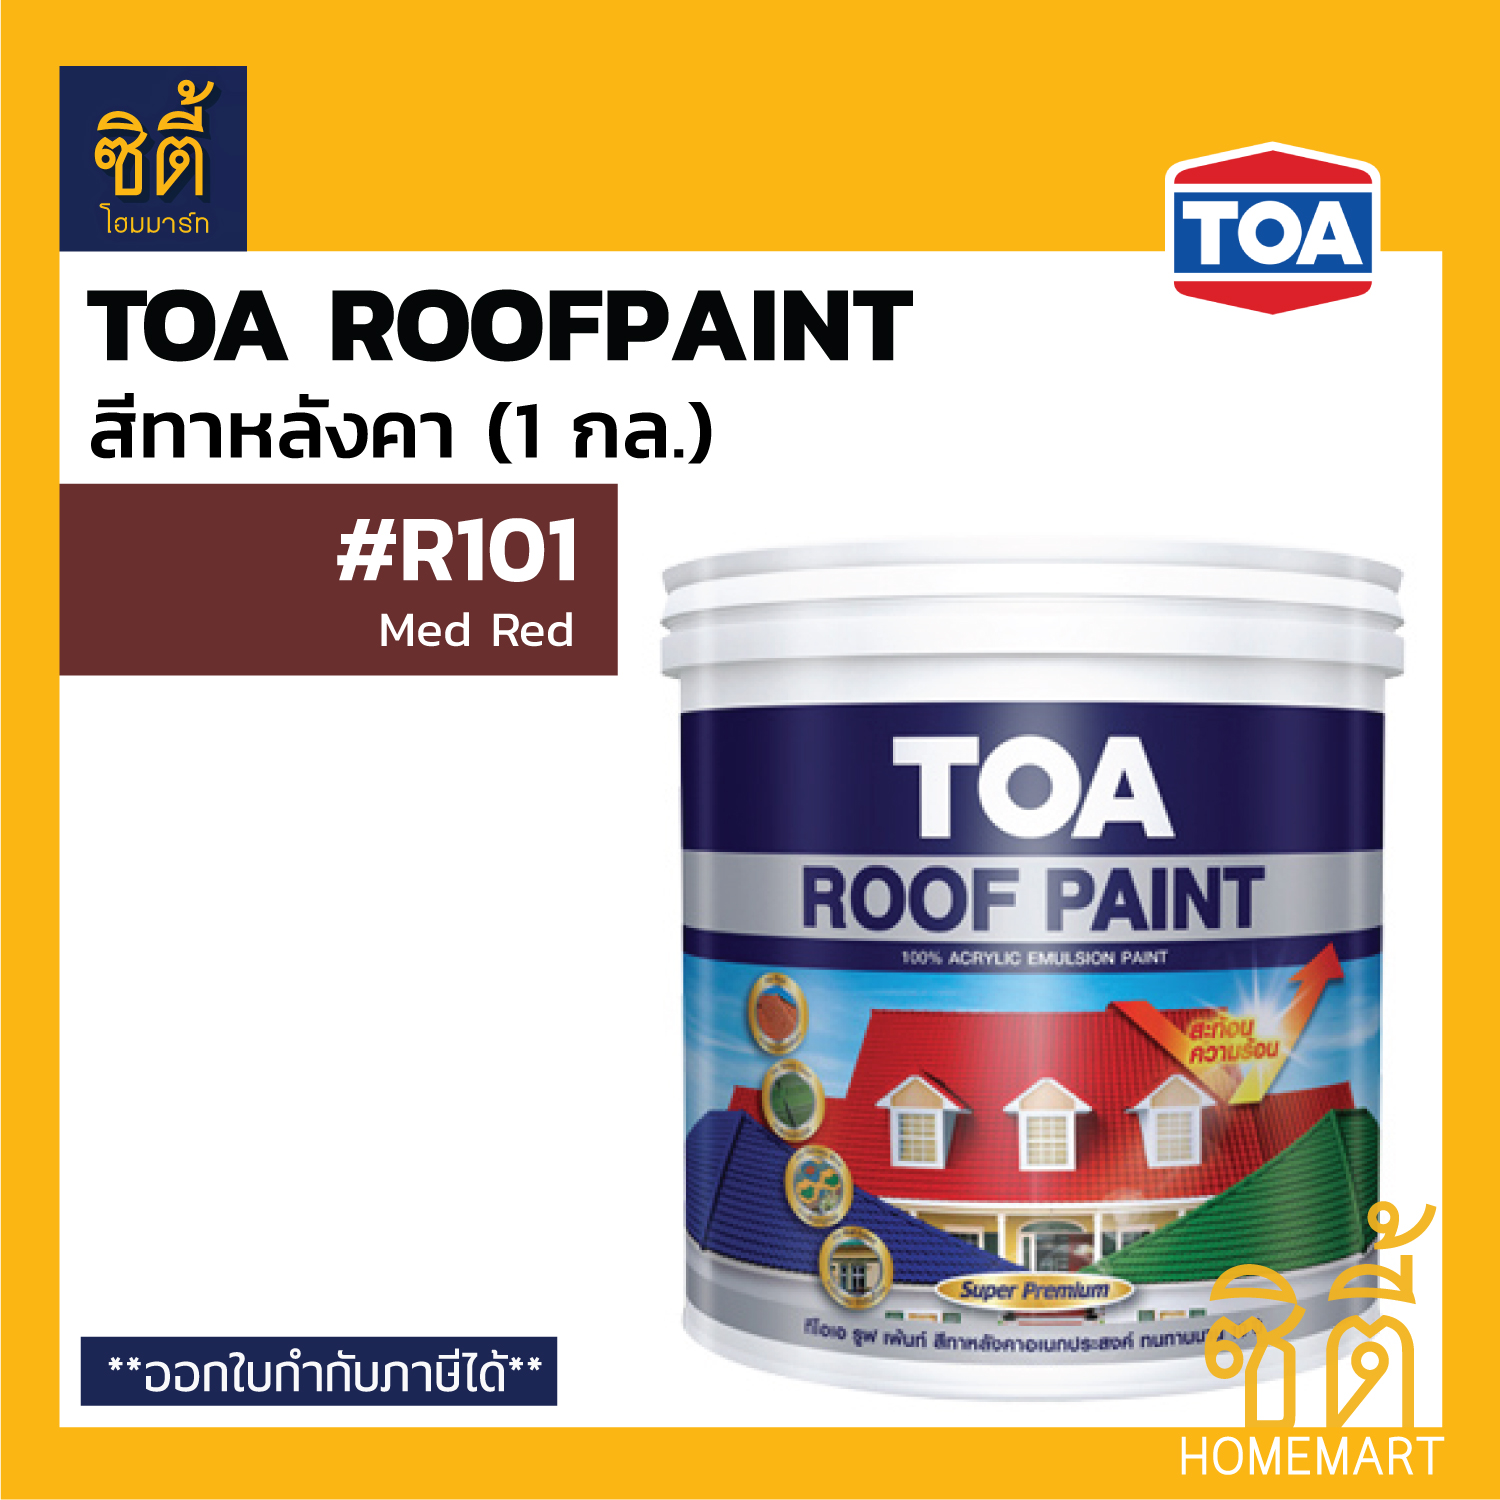 TOA Roof Paint รูฟเพ้นท์ (1 กล.) [หน้า 2/3] สี สีทากระเบื้อง สีทาหลังคา สนามกีฬา R190 R192 R193 R191 R200 R600 R700 R106 R290 R101 R400 R999 RoofPaint 